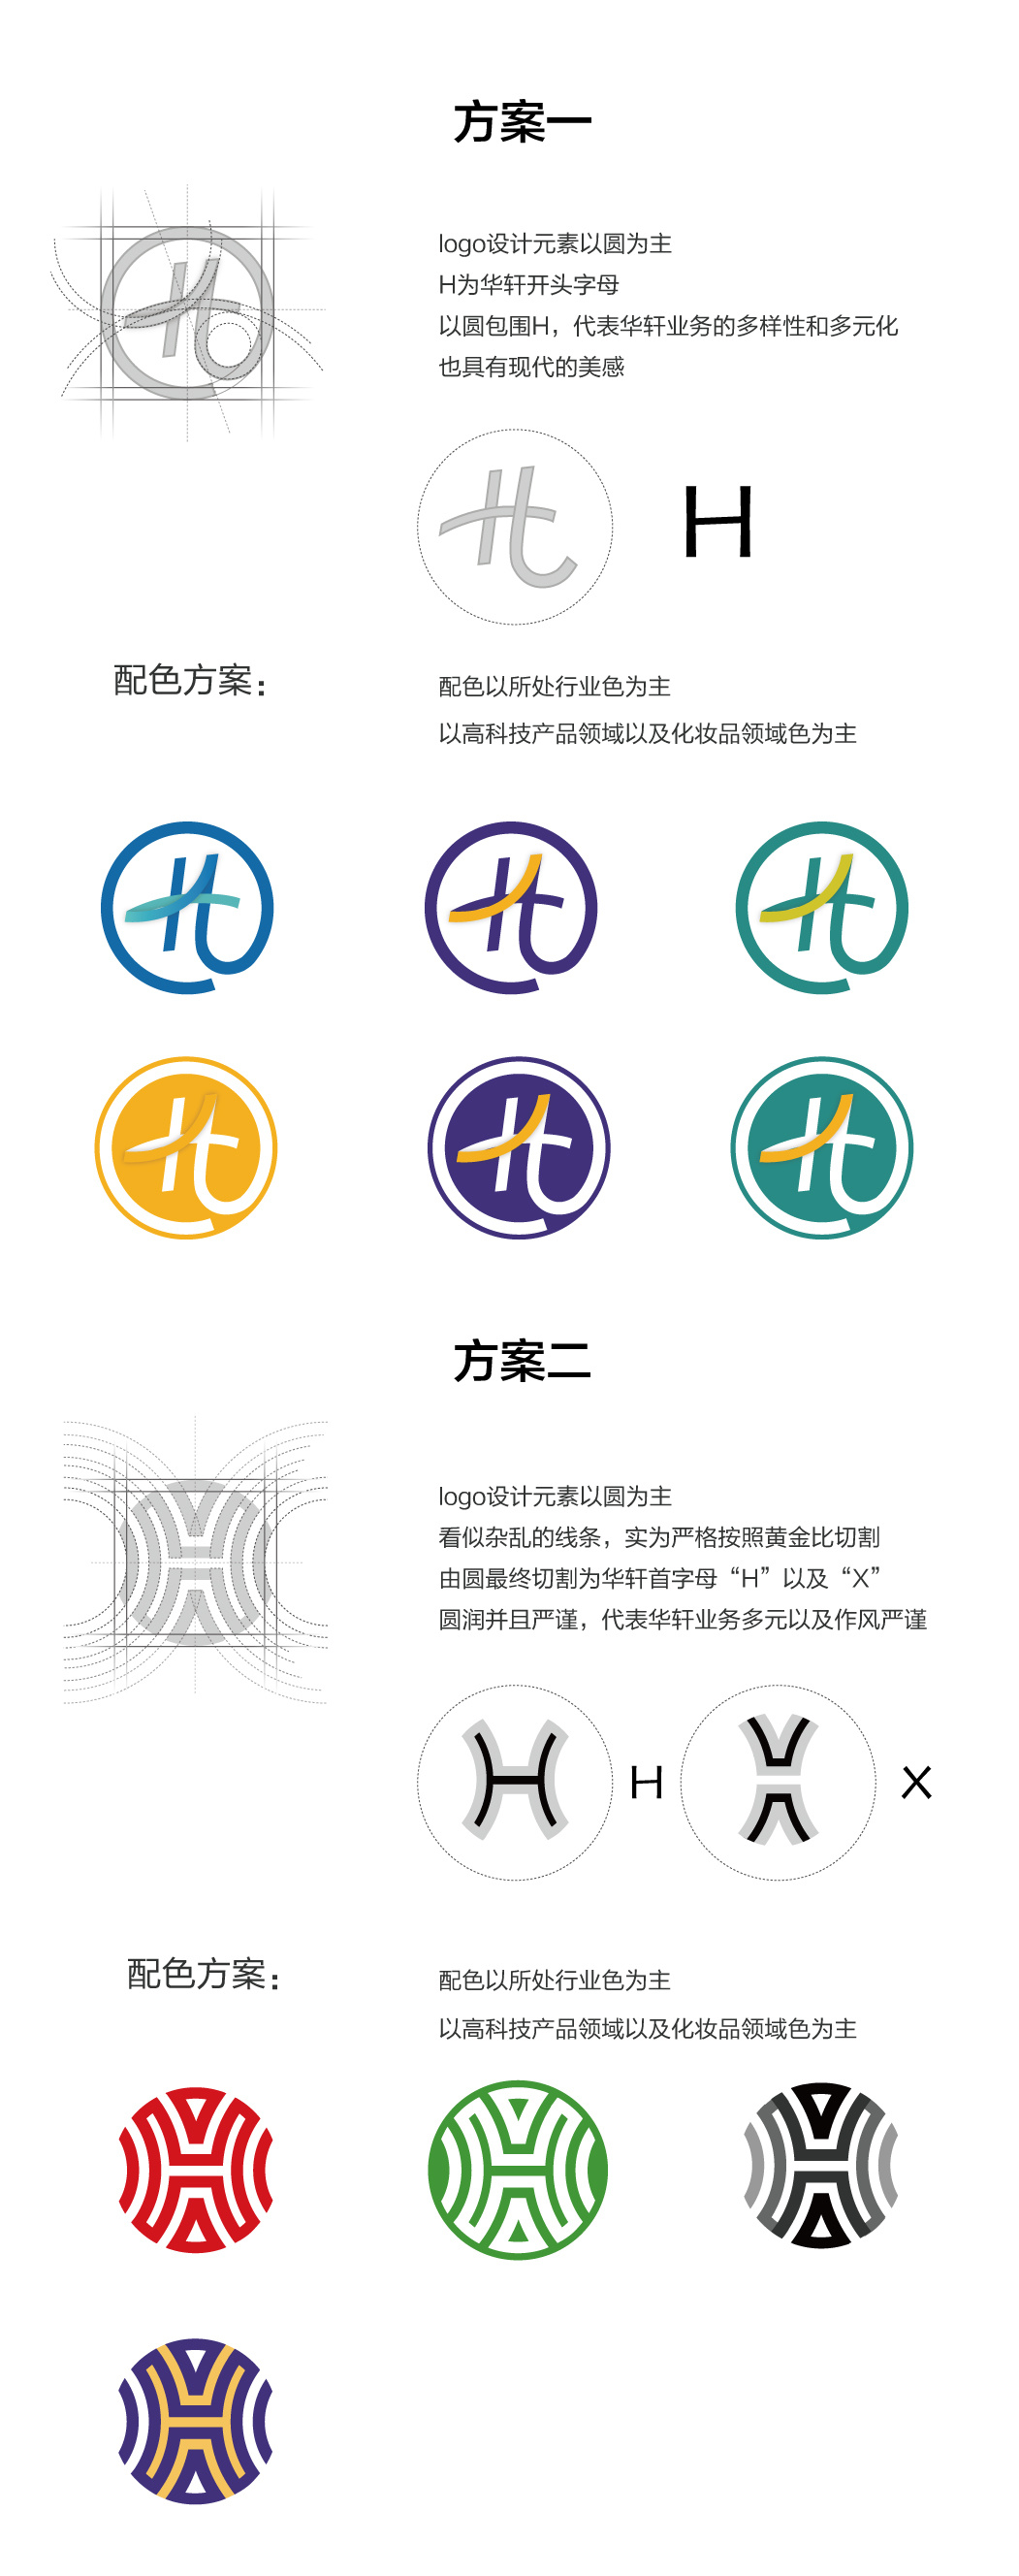 logo设计 企业logo设计 hxlogo设计标志设计 企业标志